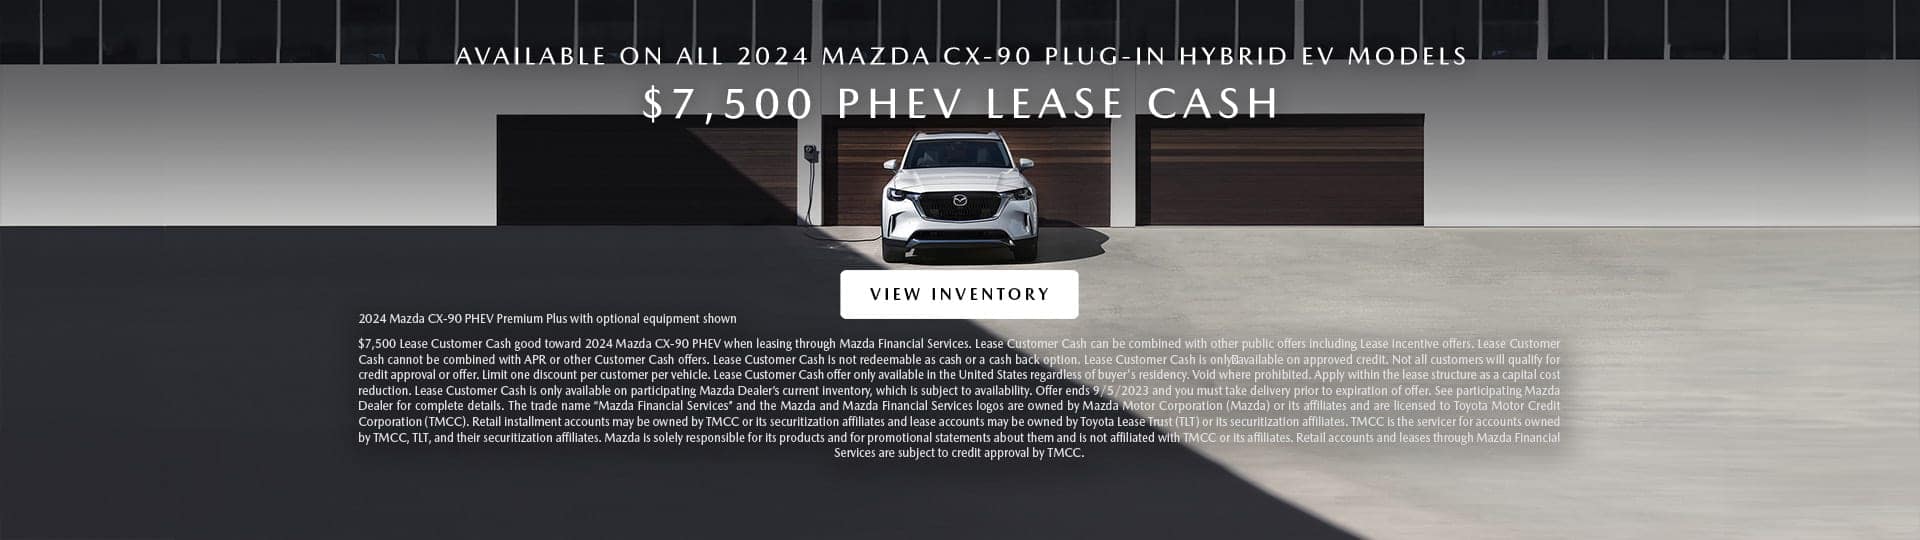 2024 CX90 PHEV offer